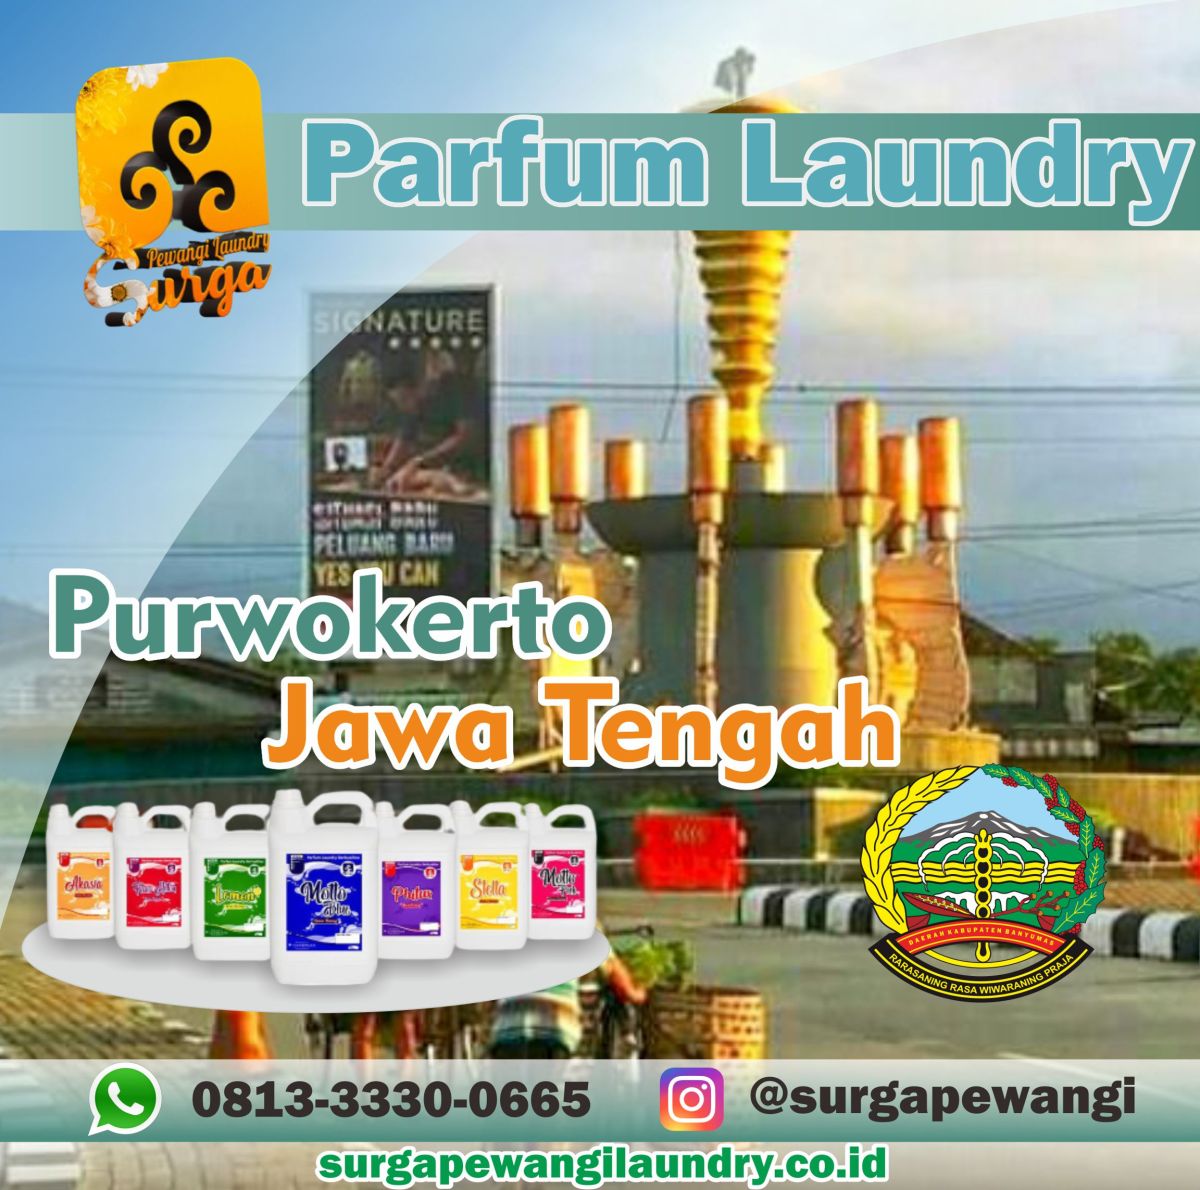 Parfum Laundry Kabupaten Purwokerto, Jawa Tengah